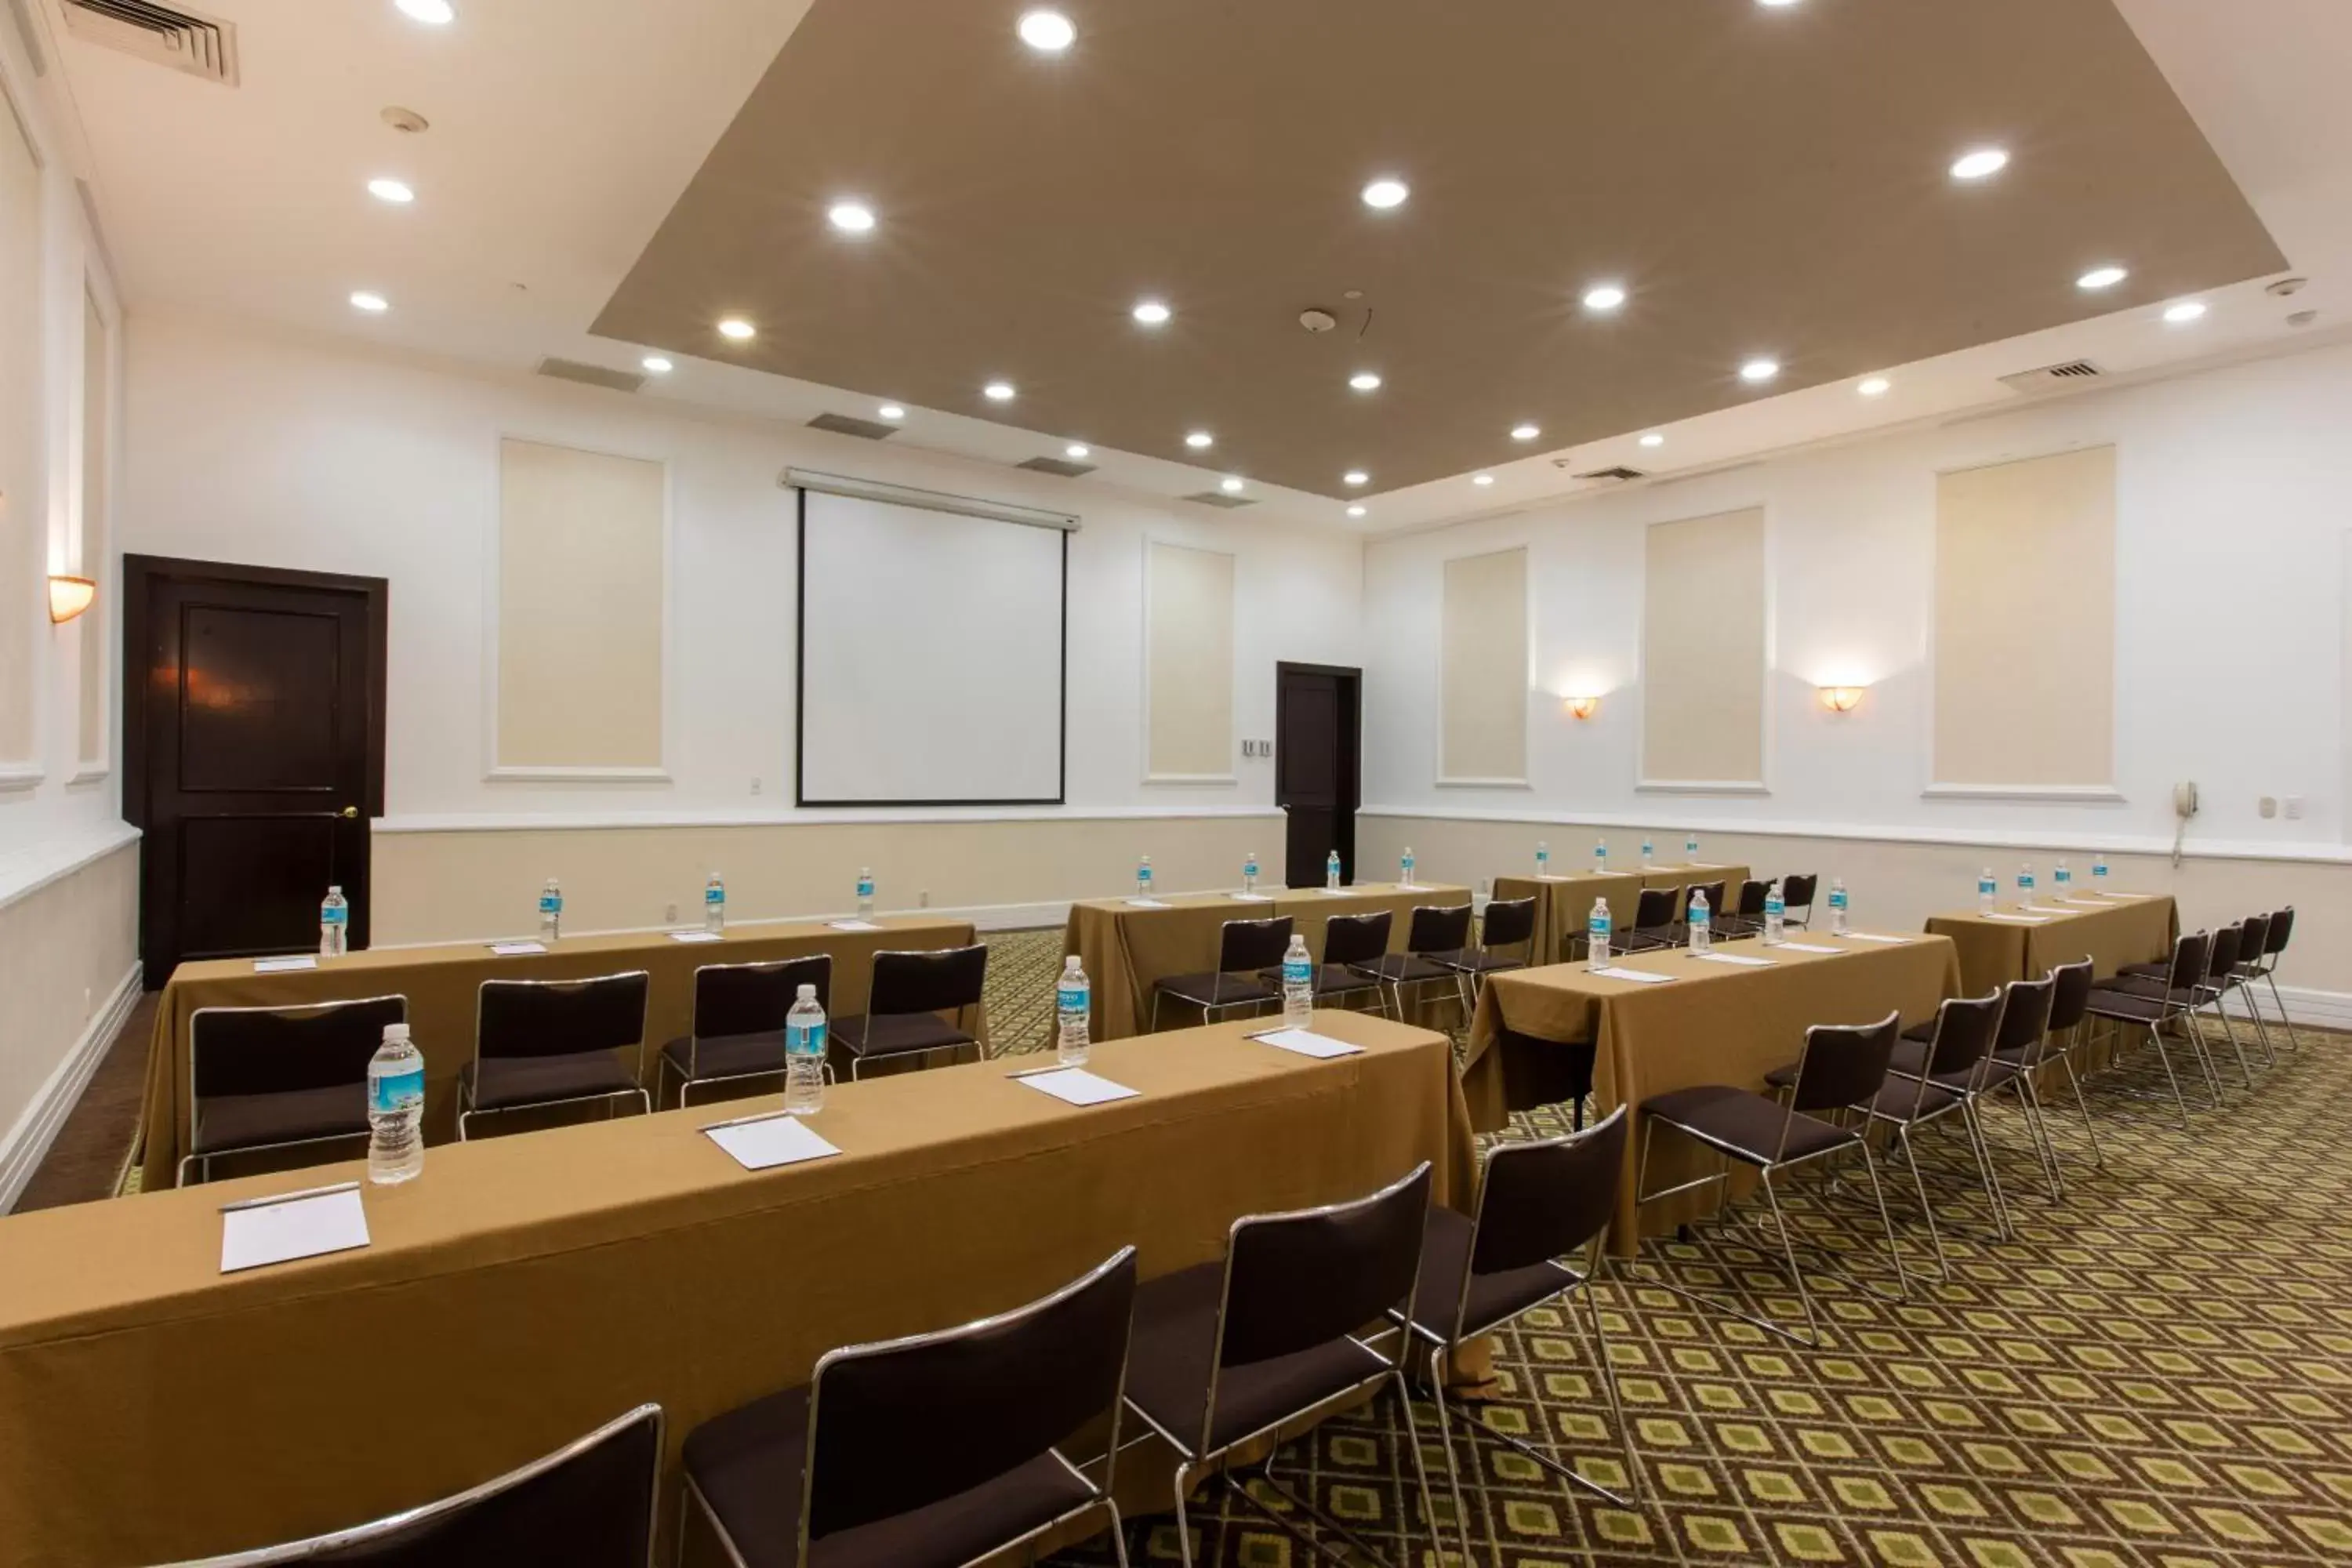 Meeting/conference room in Krystal Satelite Maria Barbara